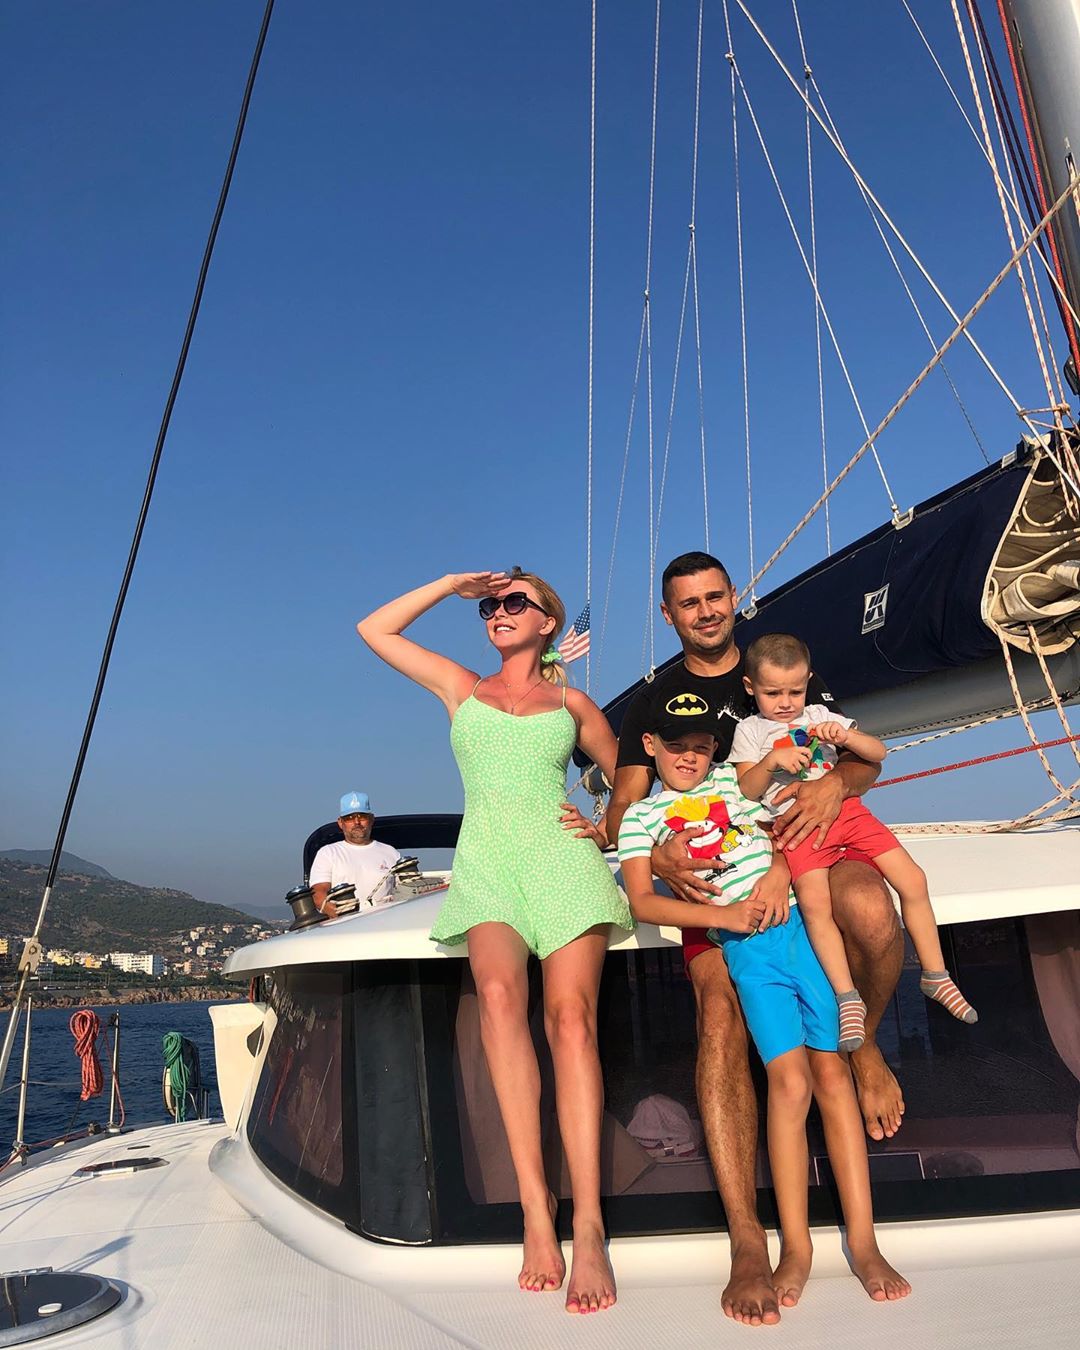 Дарья Пынзарь с семьей на отдыхе в Турции. Фото: официальная страница Дарьи Пынзарь в инстаграме